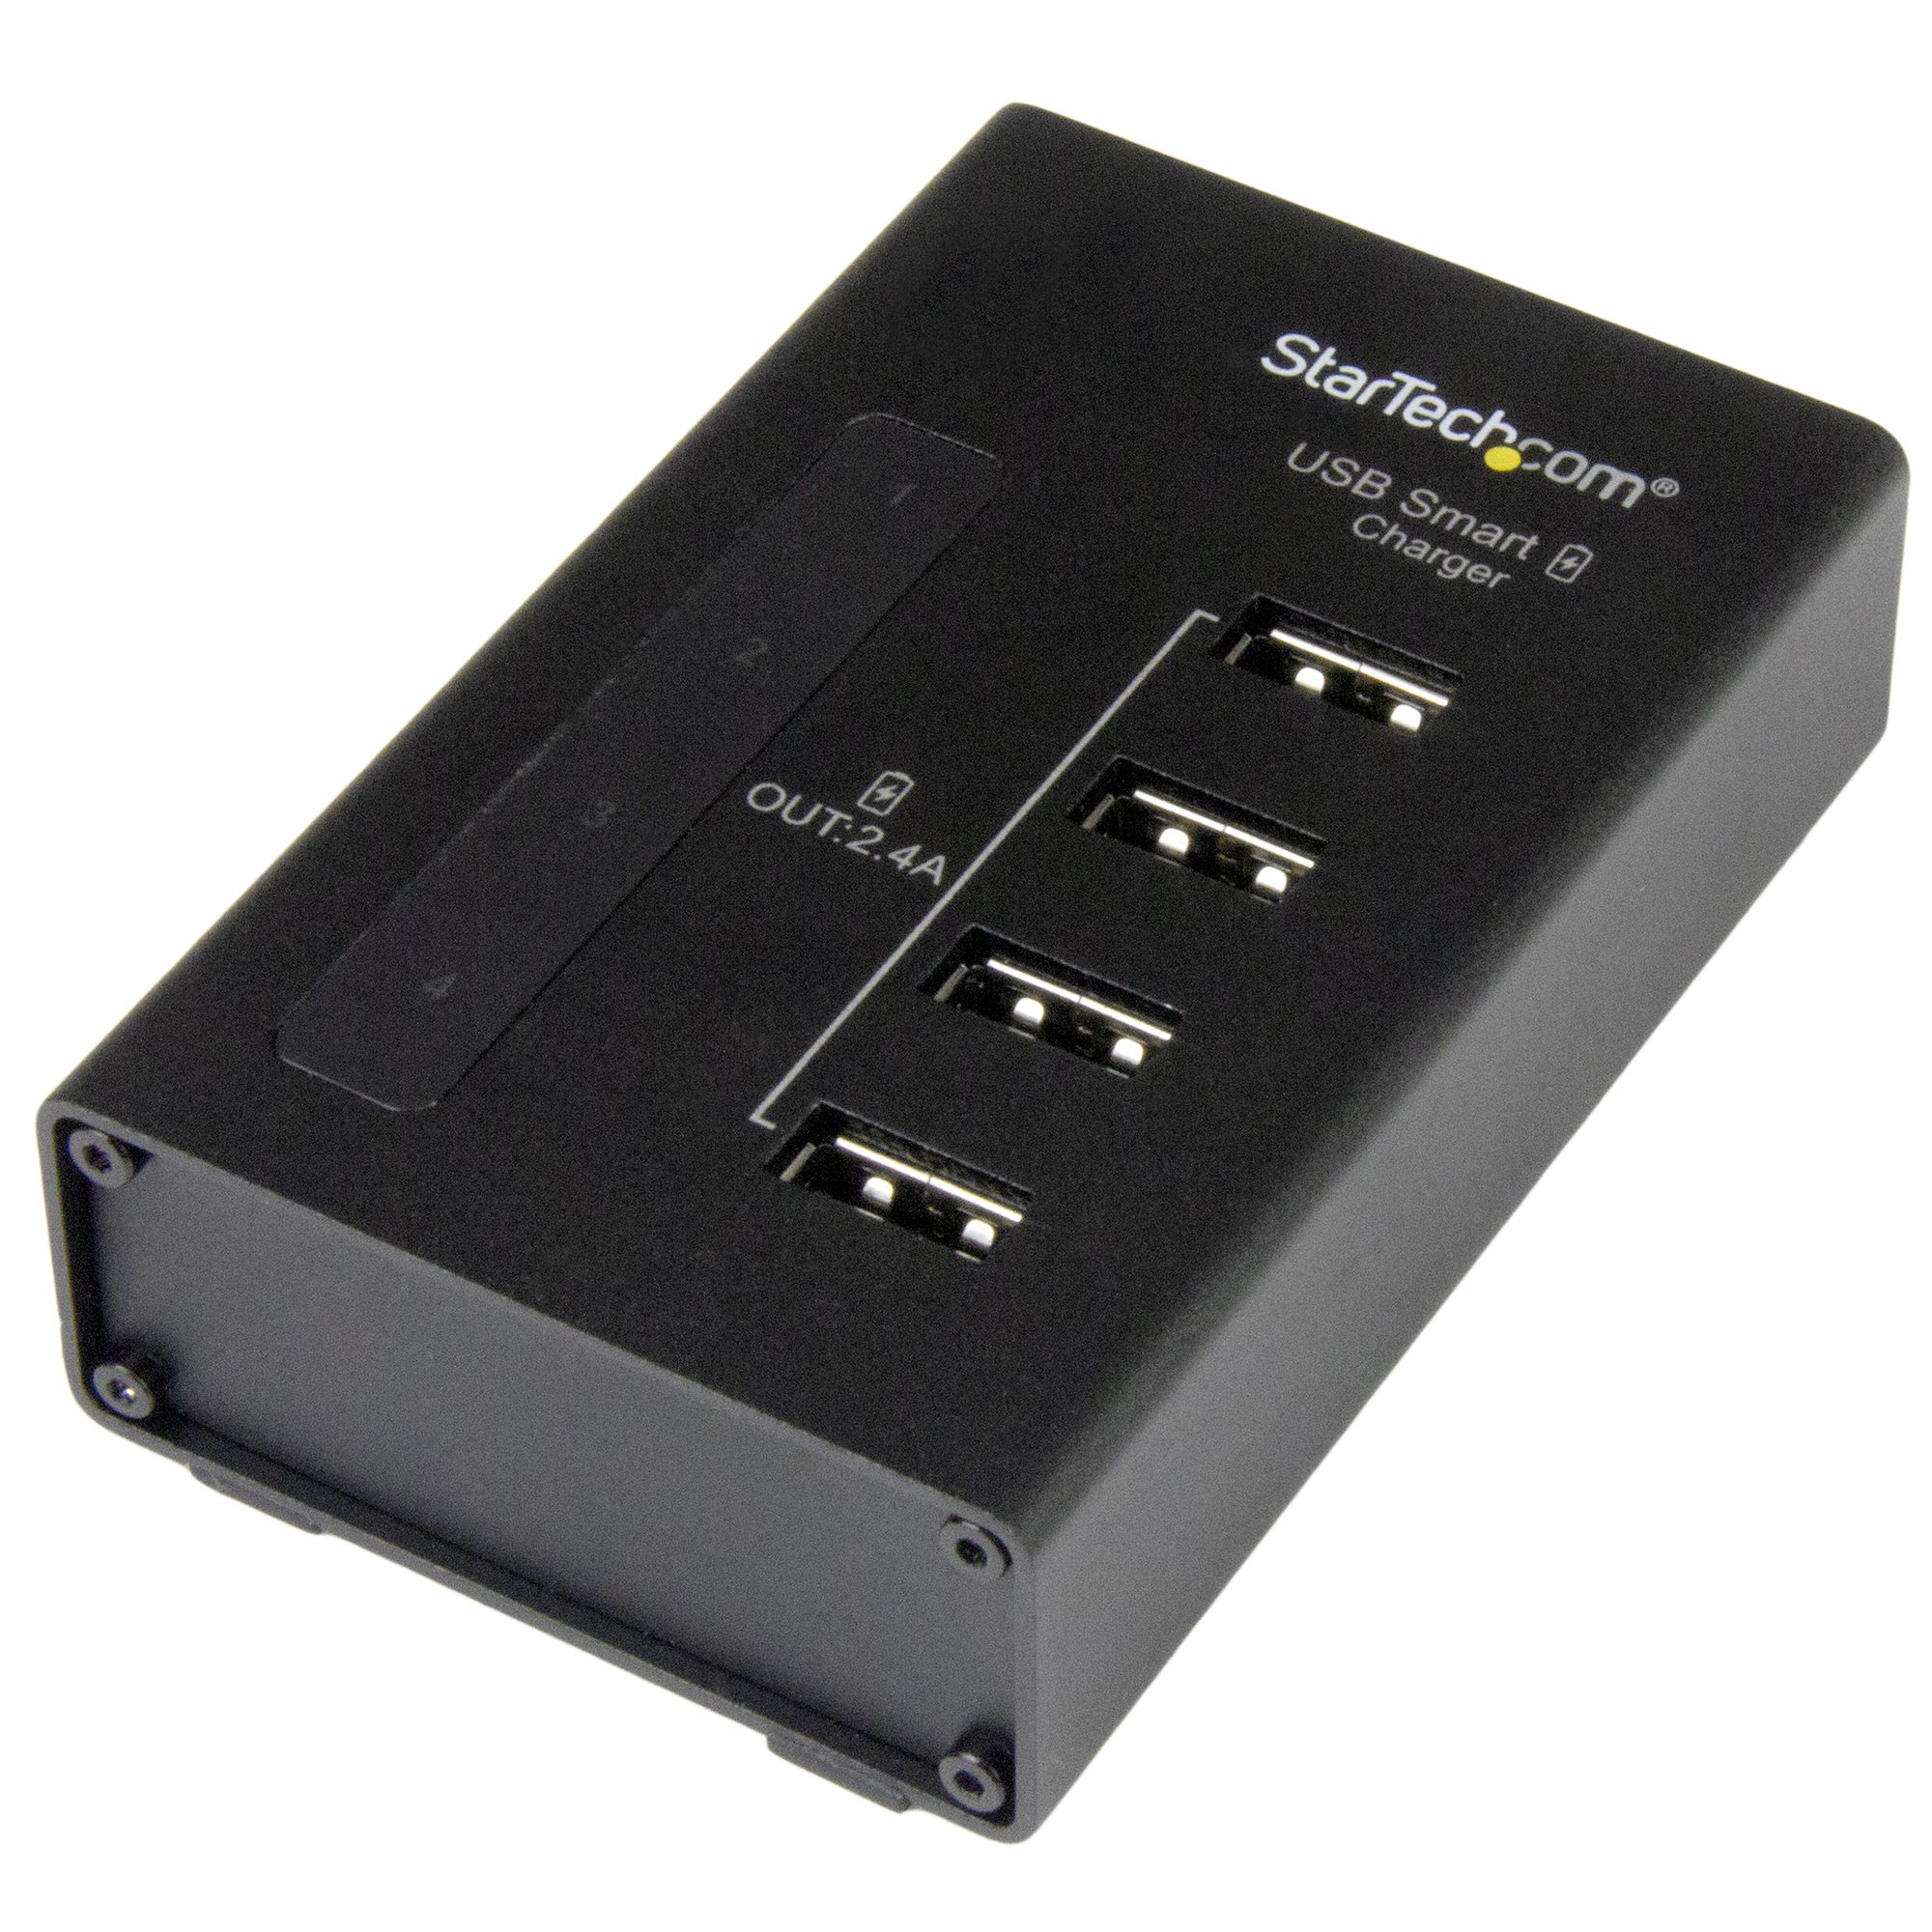 Station de charge multi-appareils 6 ports USB et 1 Port USB Type C